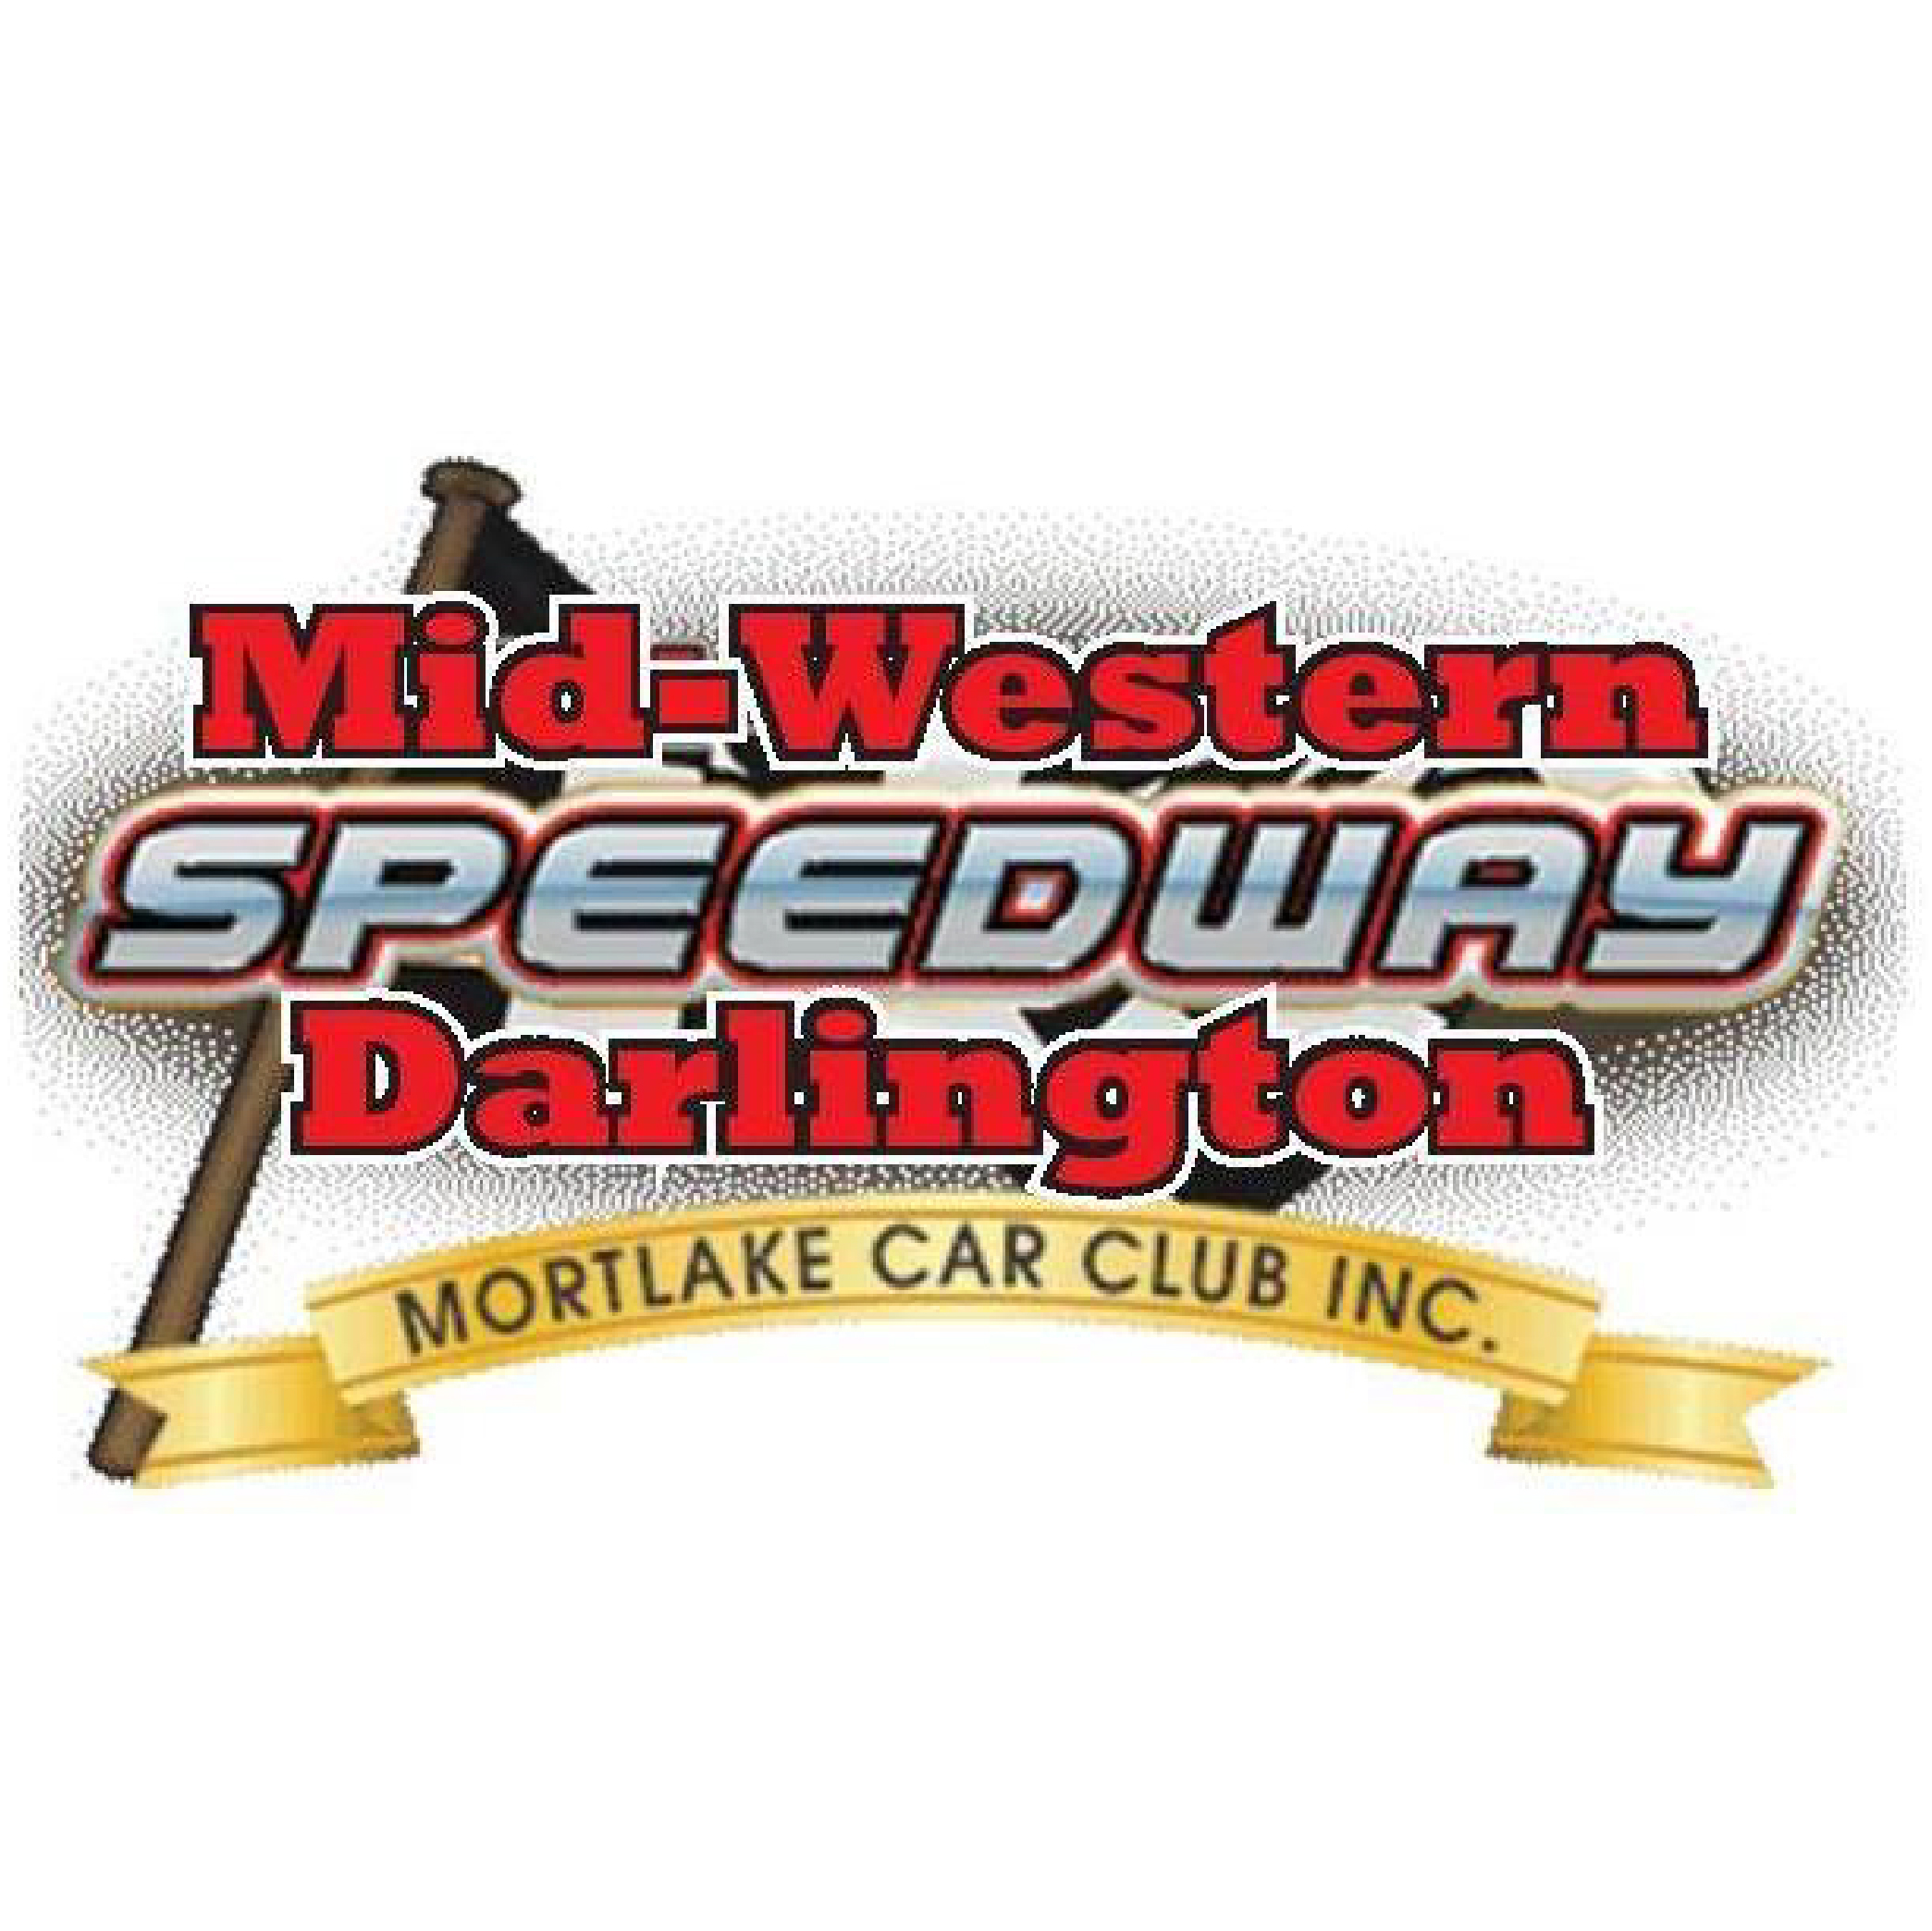 Mid-Western Speedway